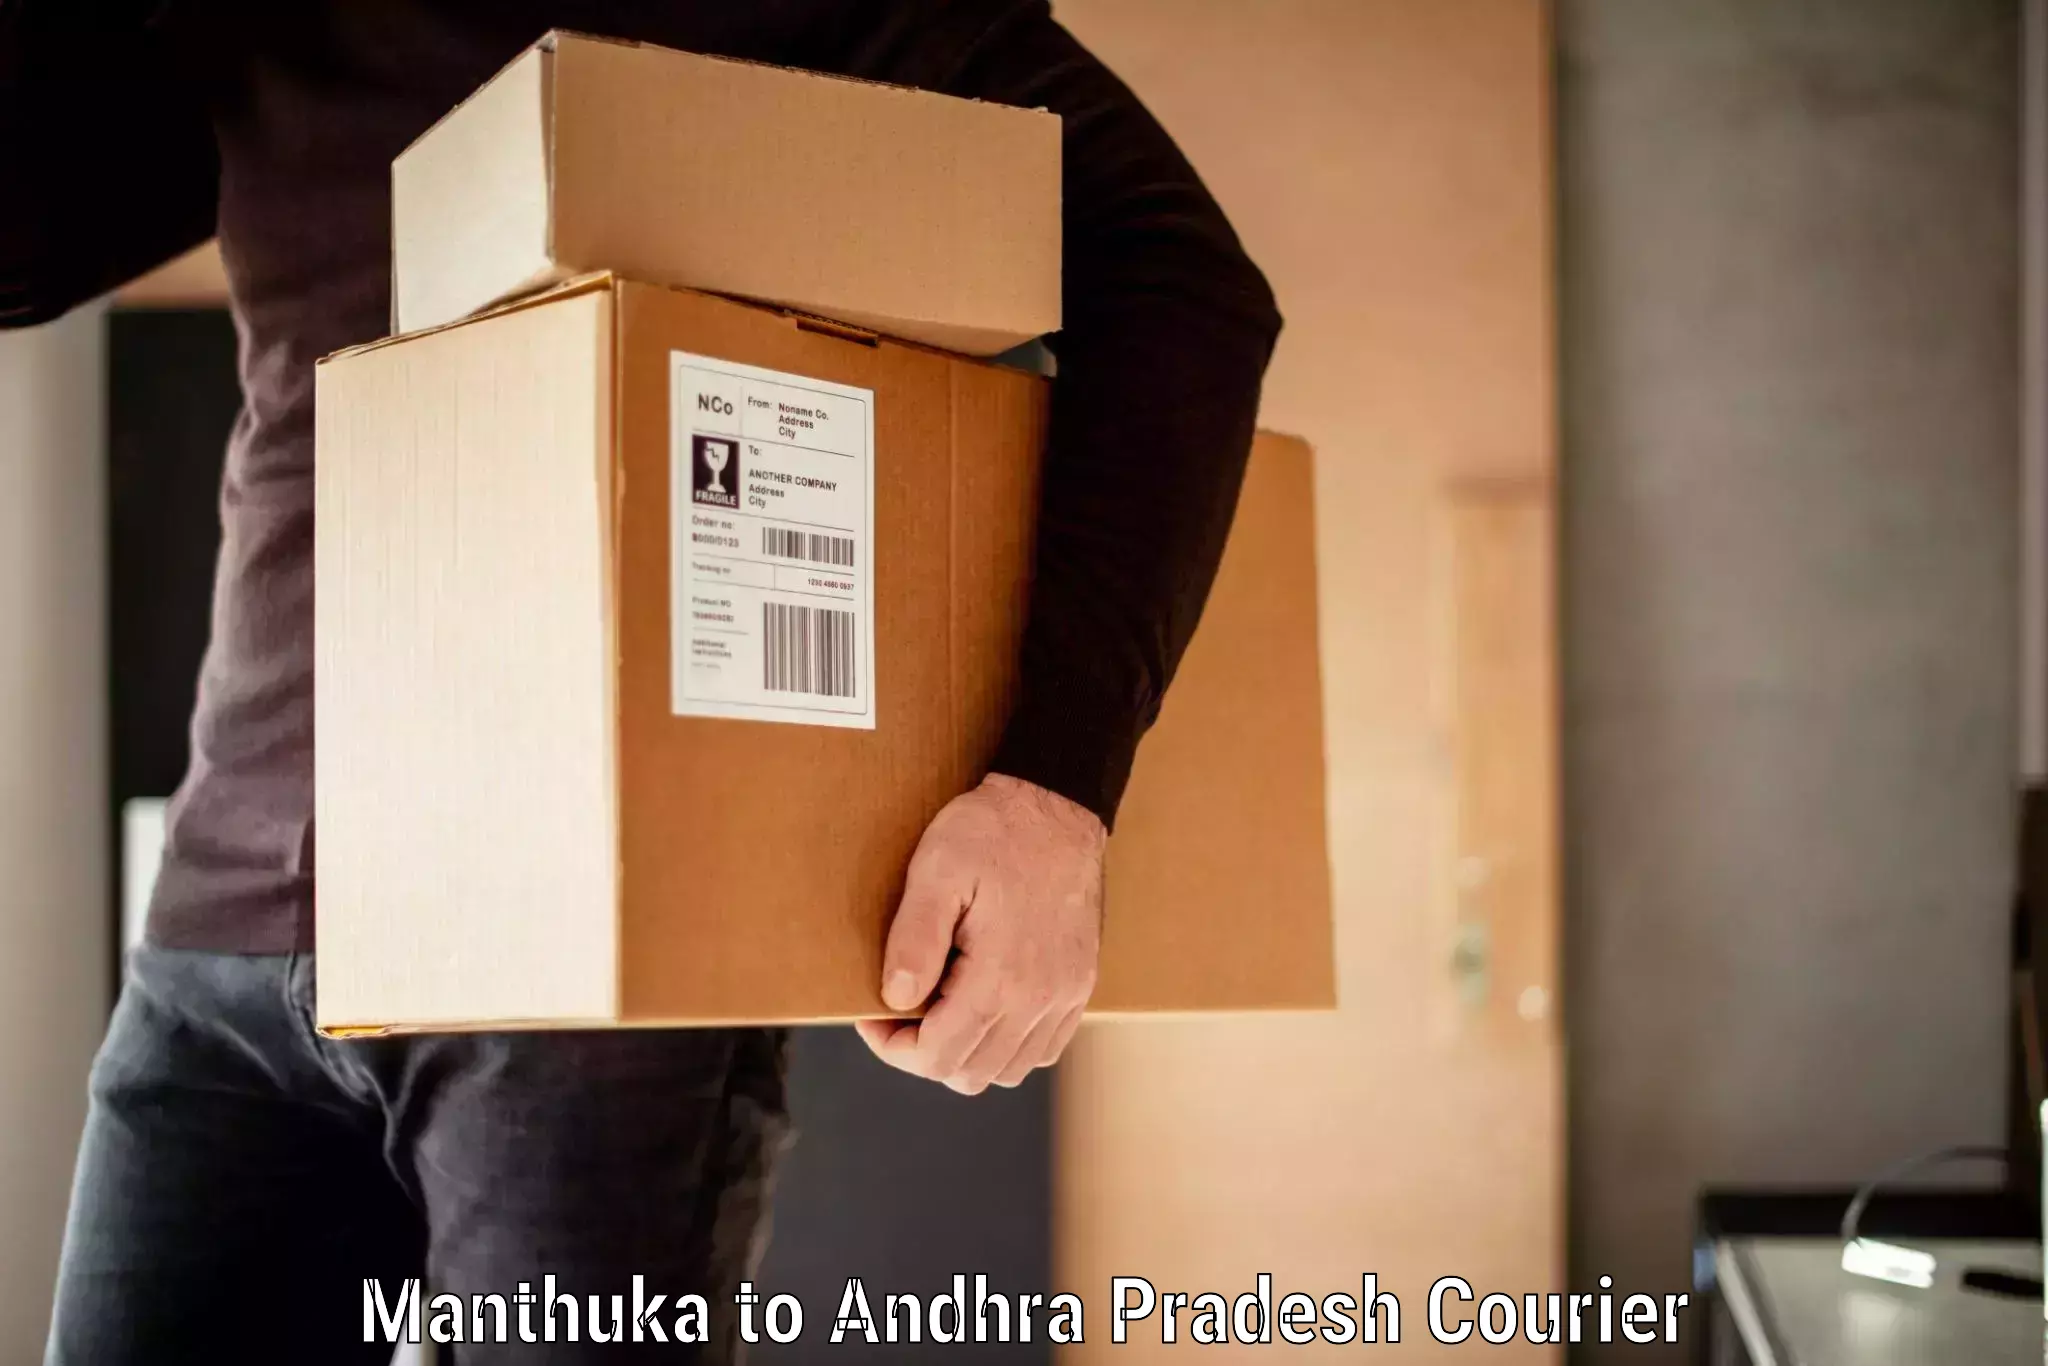 Baggage shipping service Manthuka to Giddalur